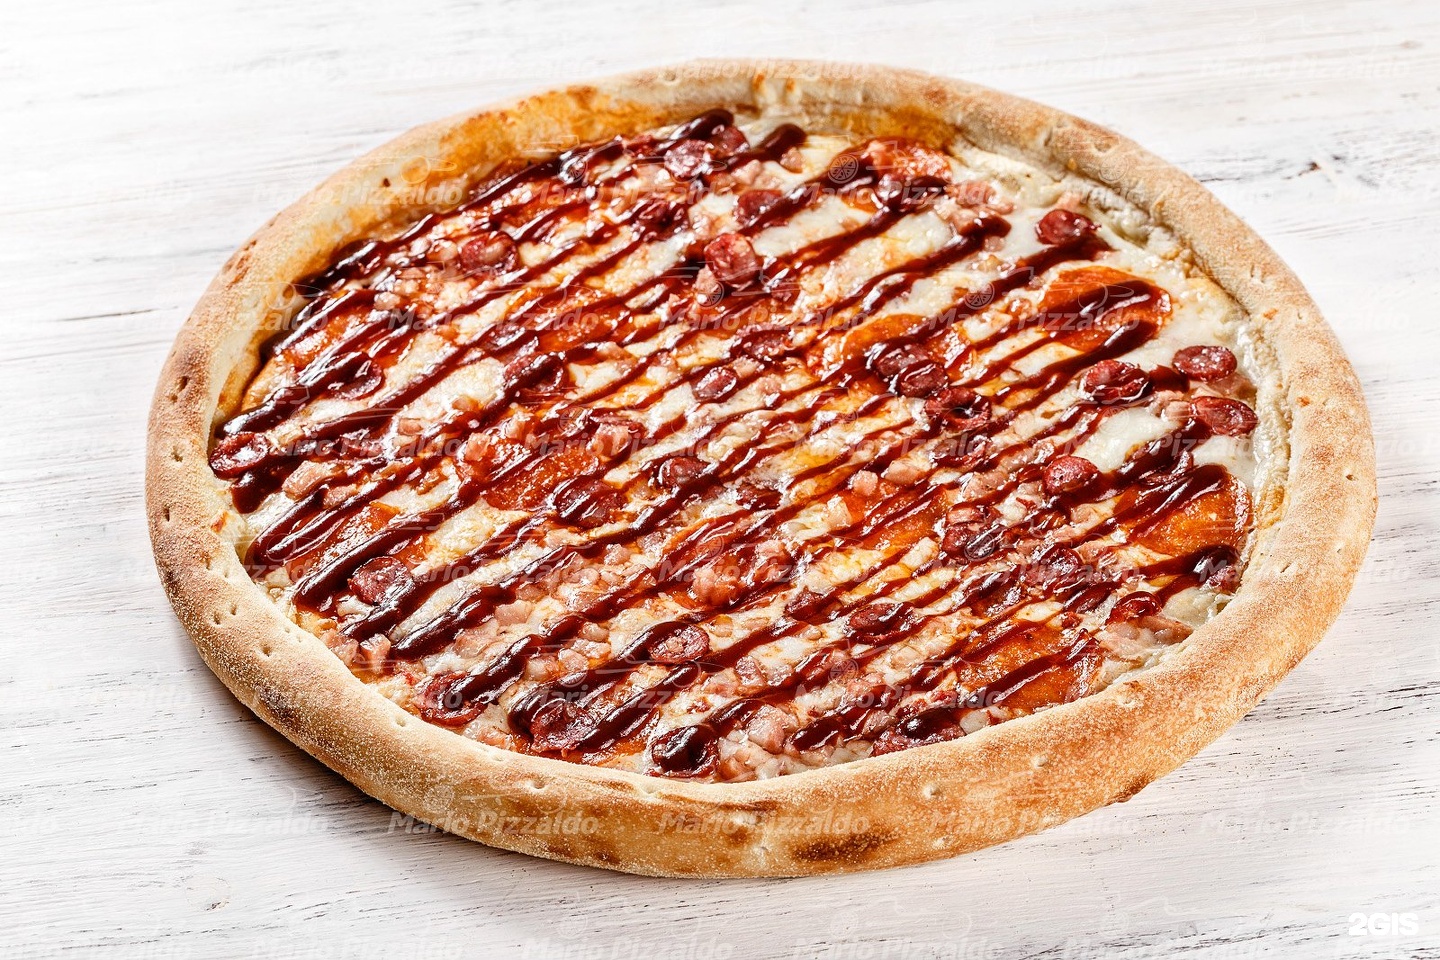 пицца с соусом барбекю как называется (120) фото